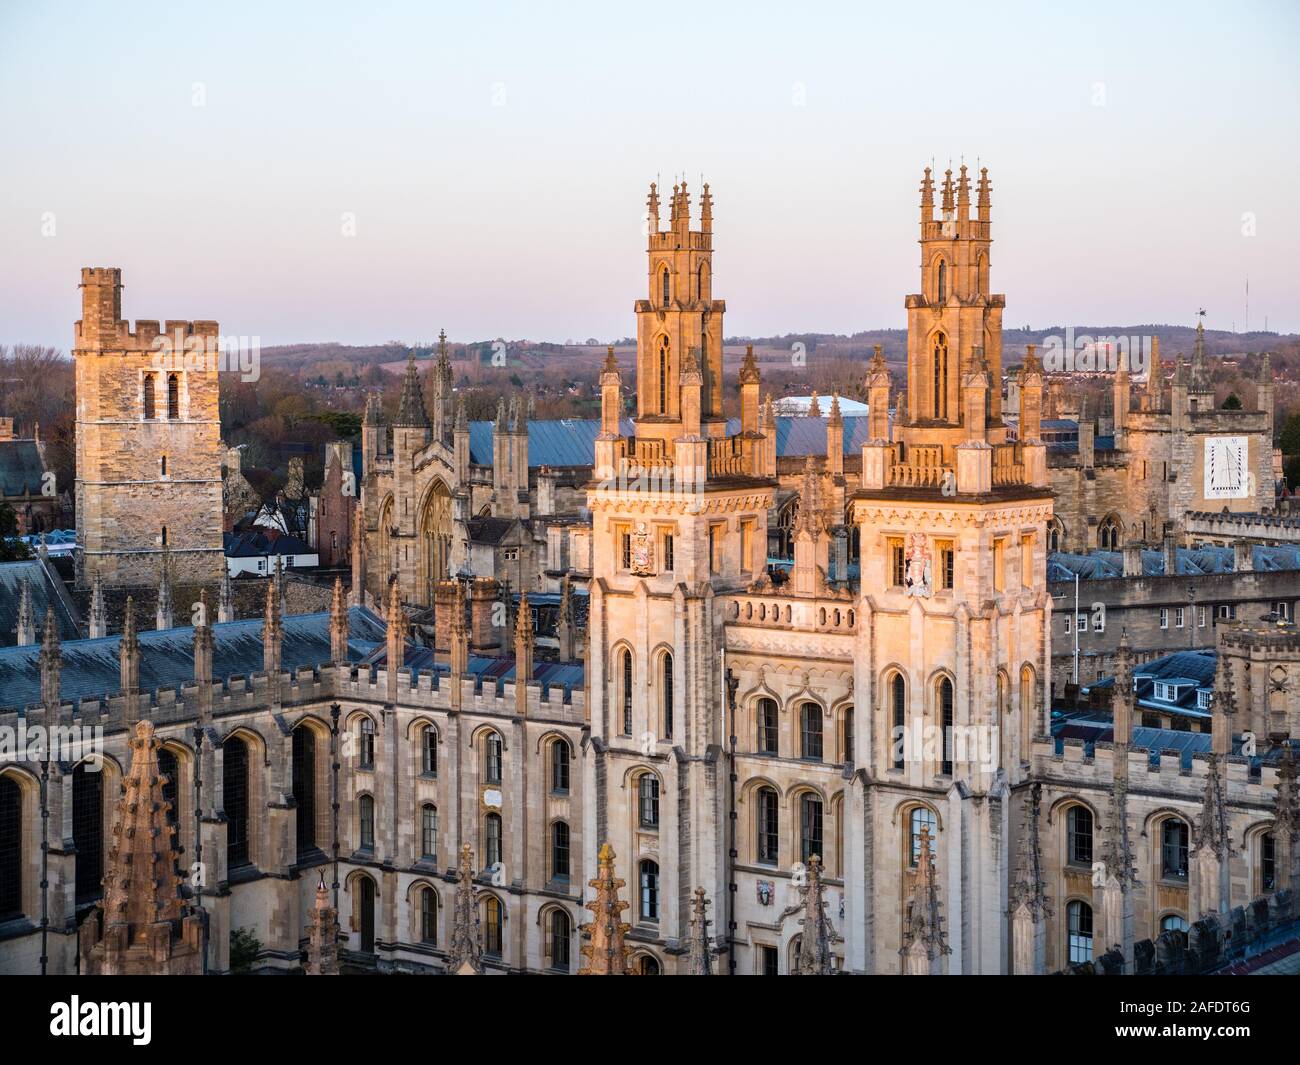 Clocher droit nouveau collège, avant-plan All Souls College, Université d'Oxford, Oxfordshire, England, UK, FR. Banque D'Images